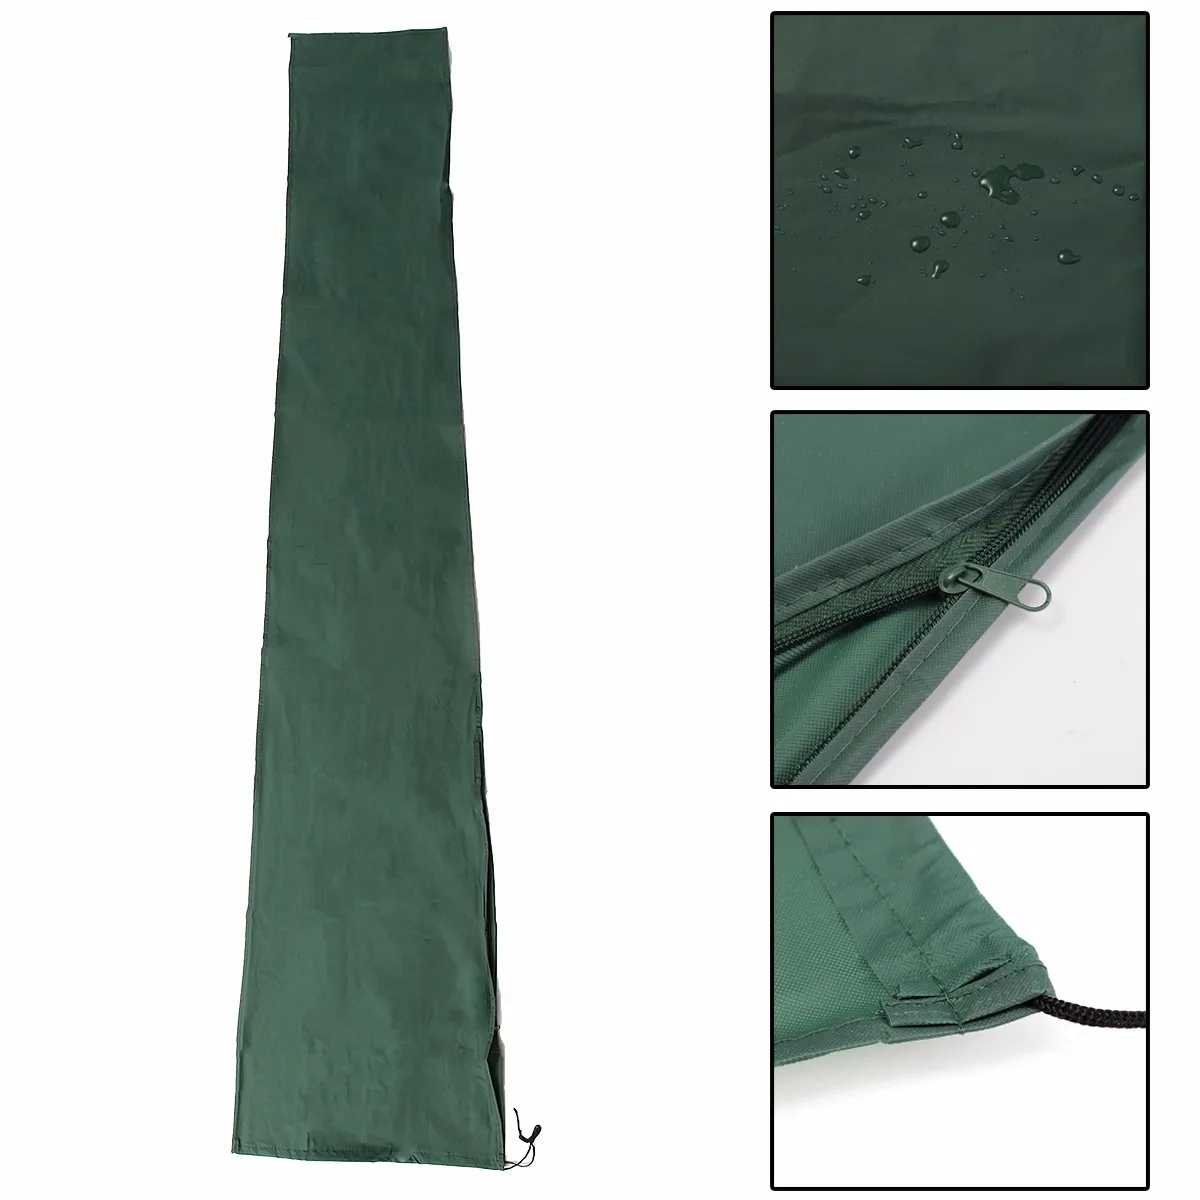 Outdoor 190x96cm Patio Umbrella Waterproof Protective Cover with Zipper for Garden Cantilever Parasol Umbrellas Cover